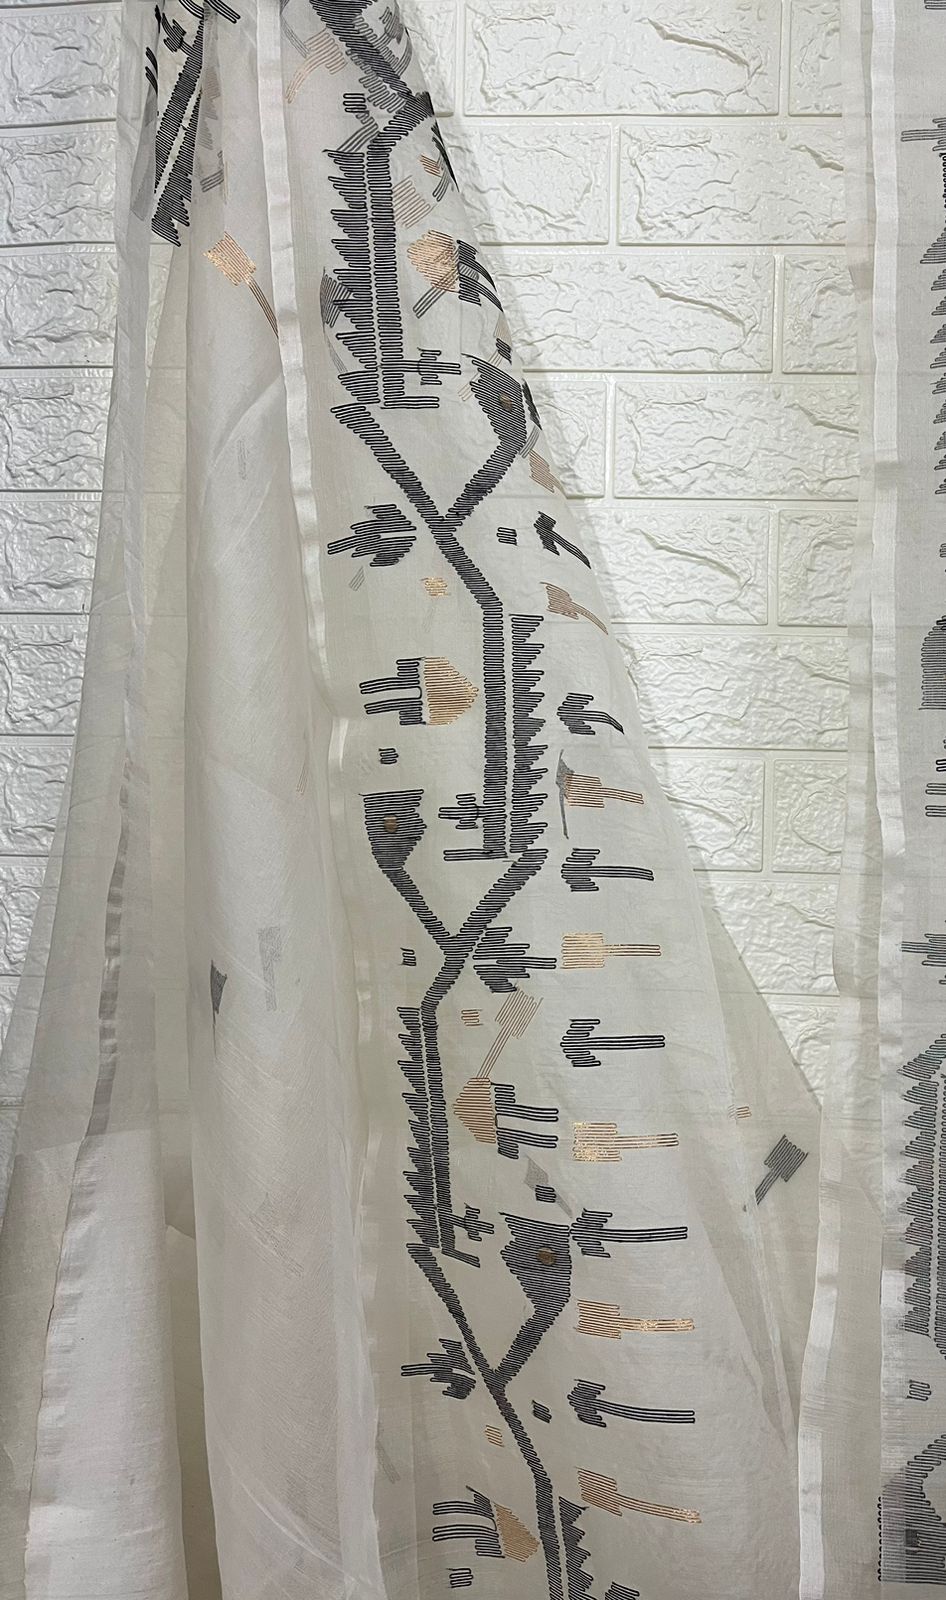 কালো ও জরি ঐতিহ্যবাহী মসলিন সিল্ক জামদানি শাড়ির সঙ্গে অফহোয়াইট